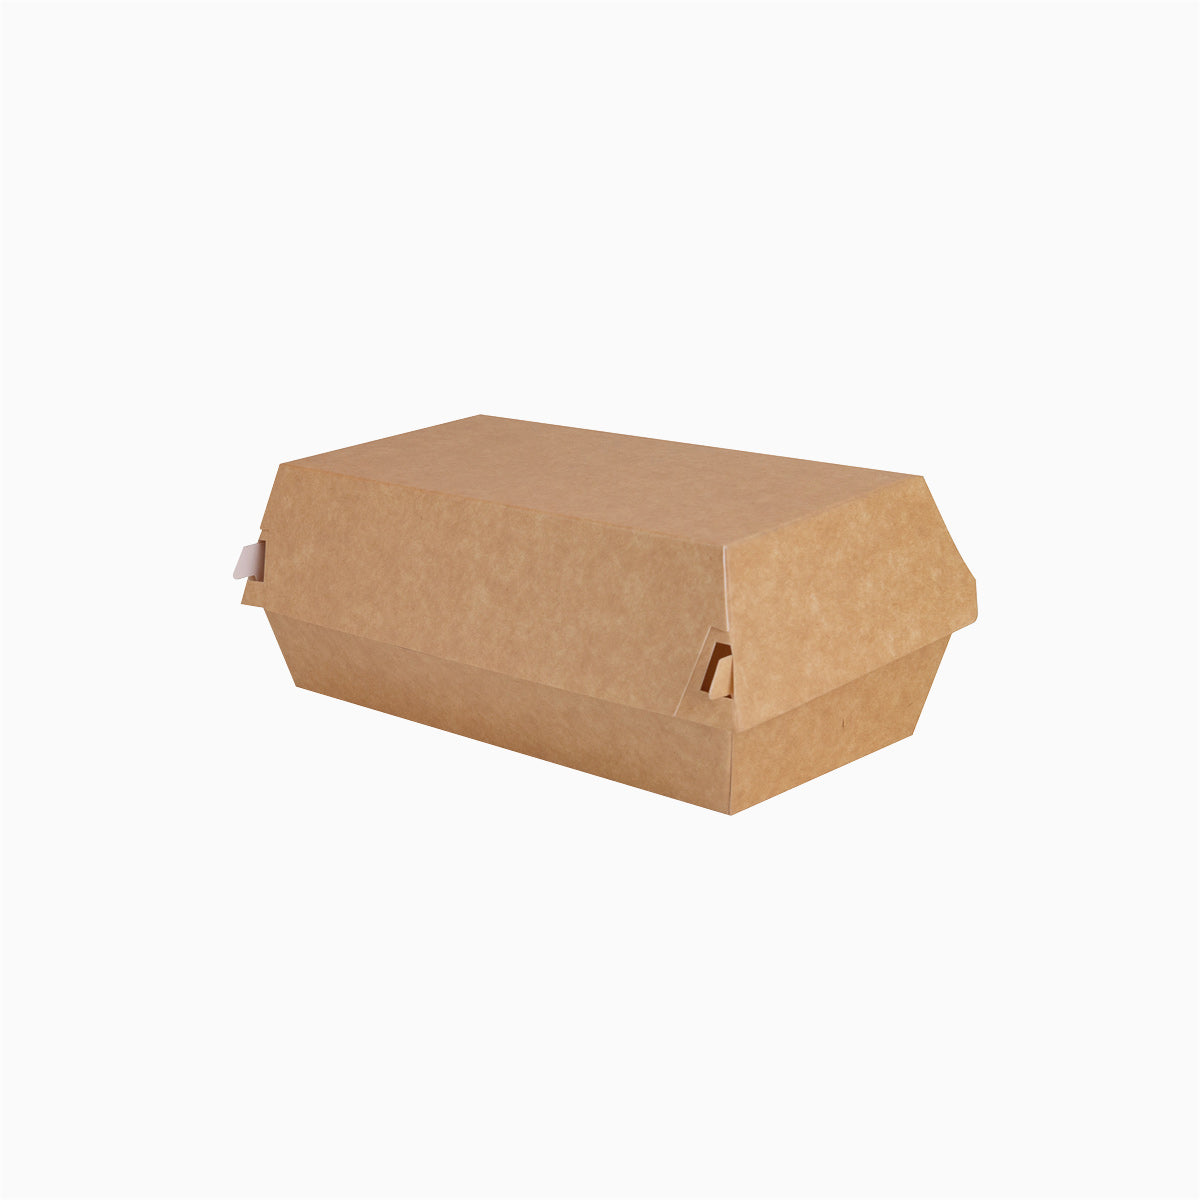 Envase Portamenú Hamburguesa Cartón 17,5 x 9 x 8,5 cm - Take Away